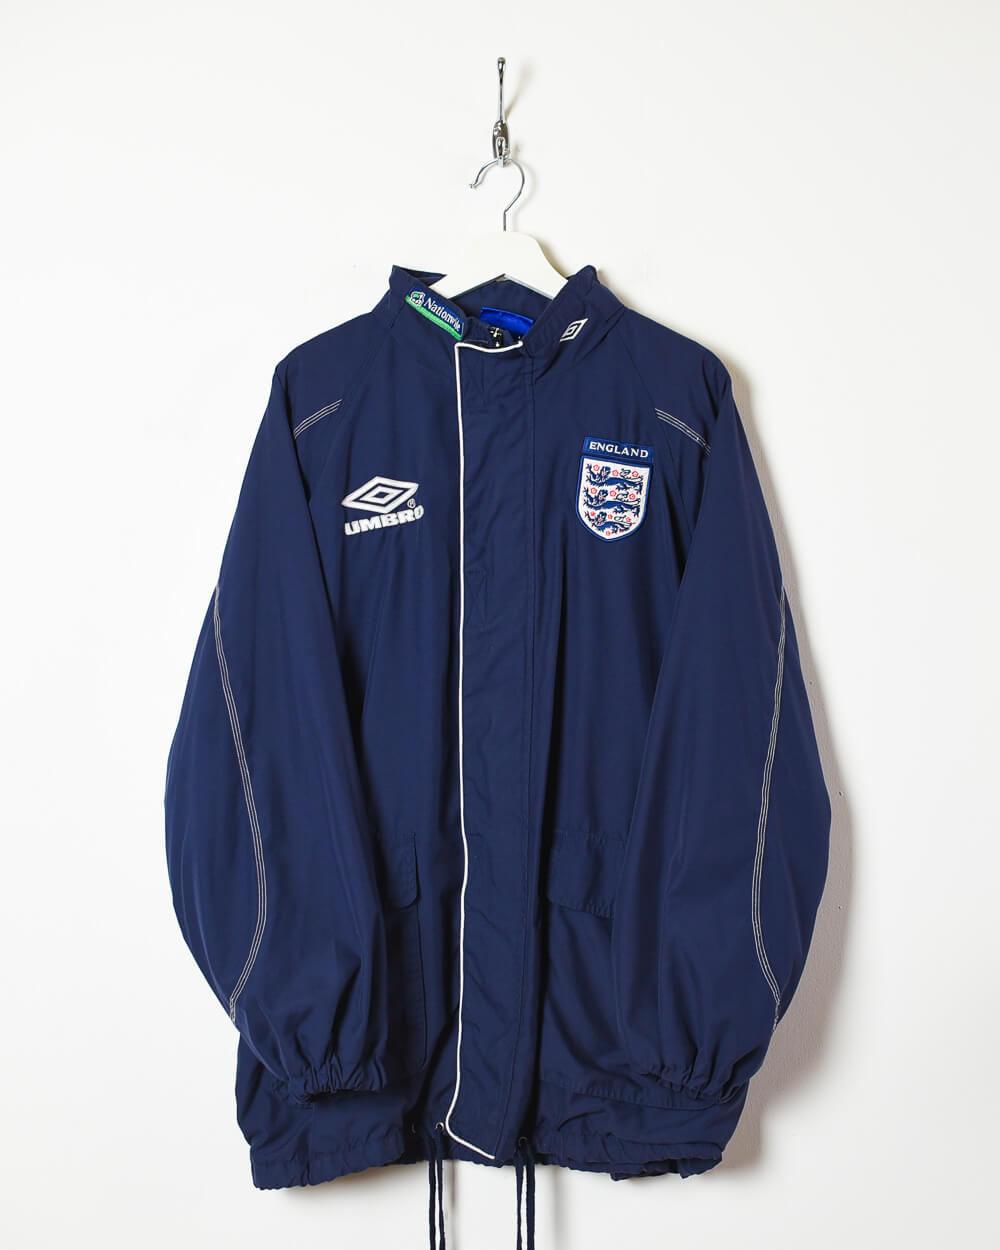 Navy Nike 90s England National Football Team Training Jacket - X-Large